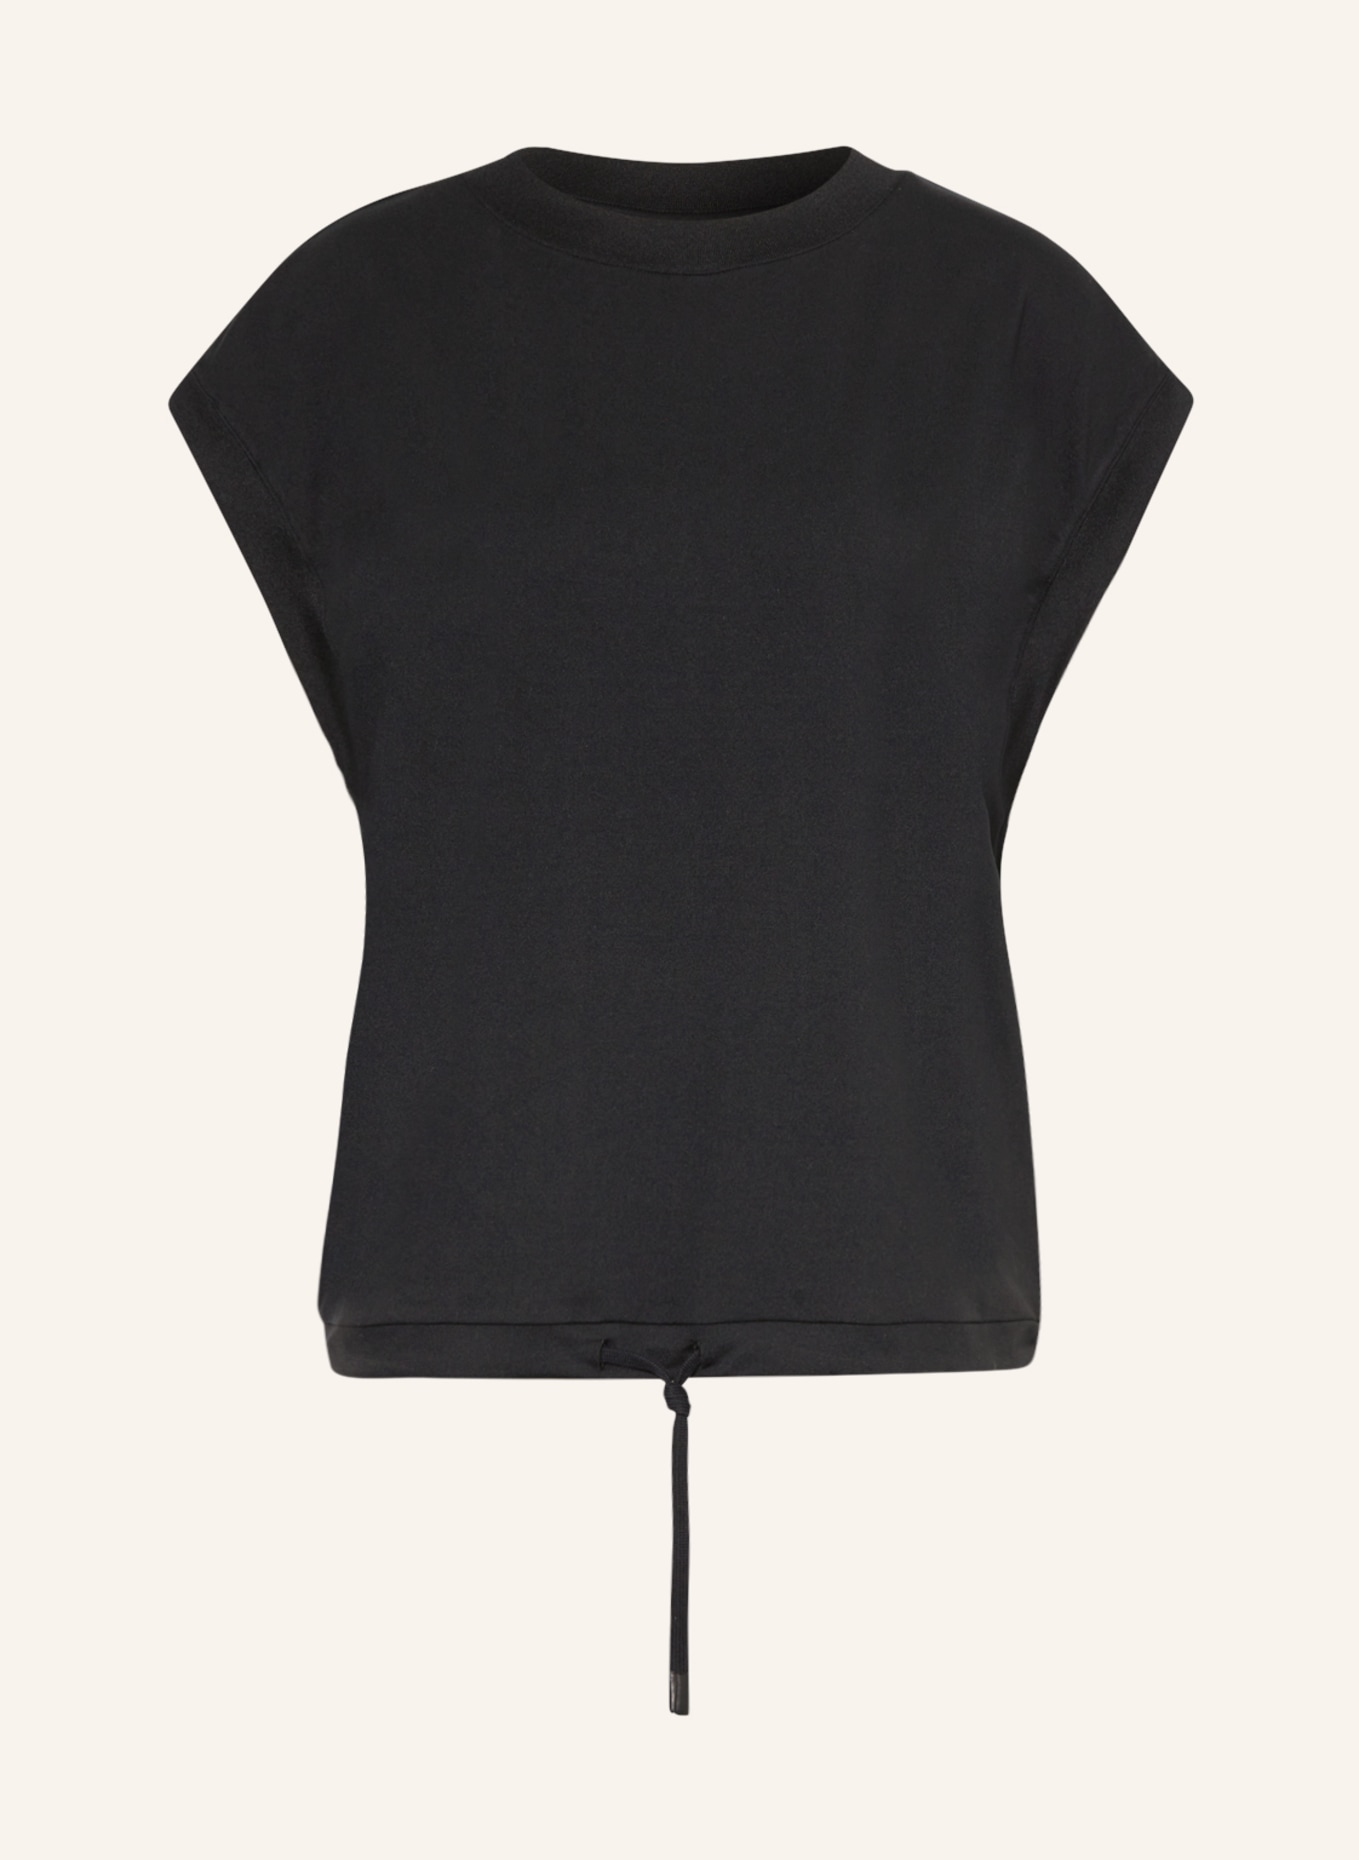 VARLEY T-shirt, Color: BLACK (Image 1)